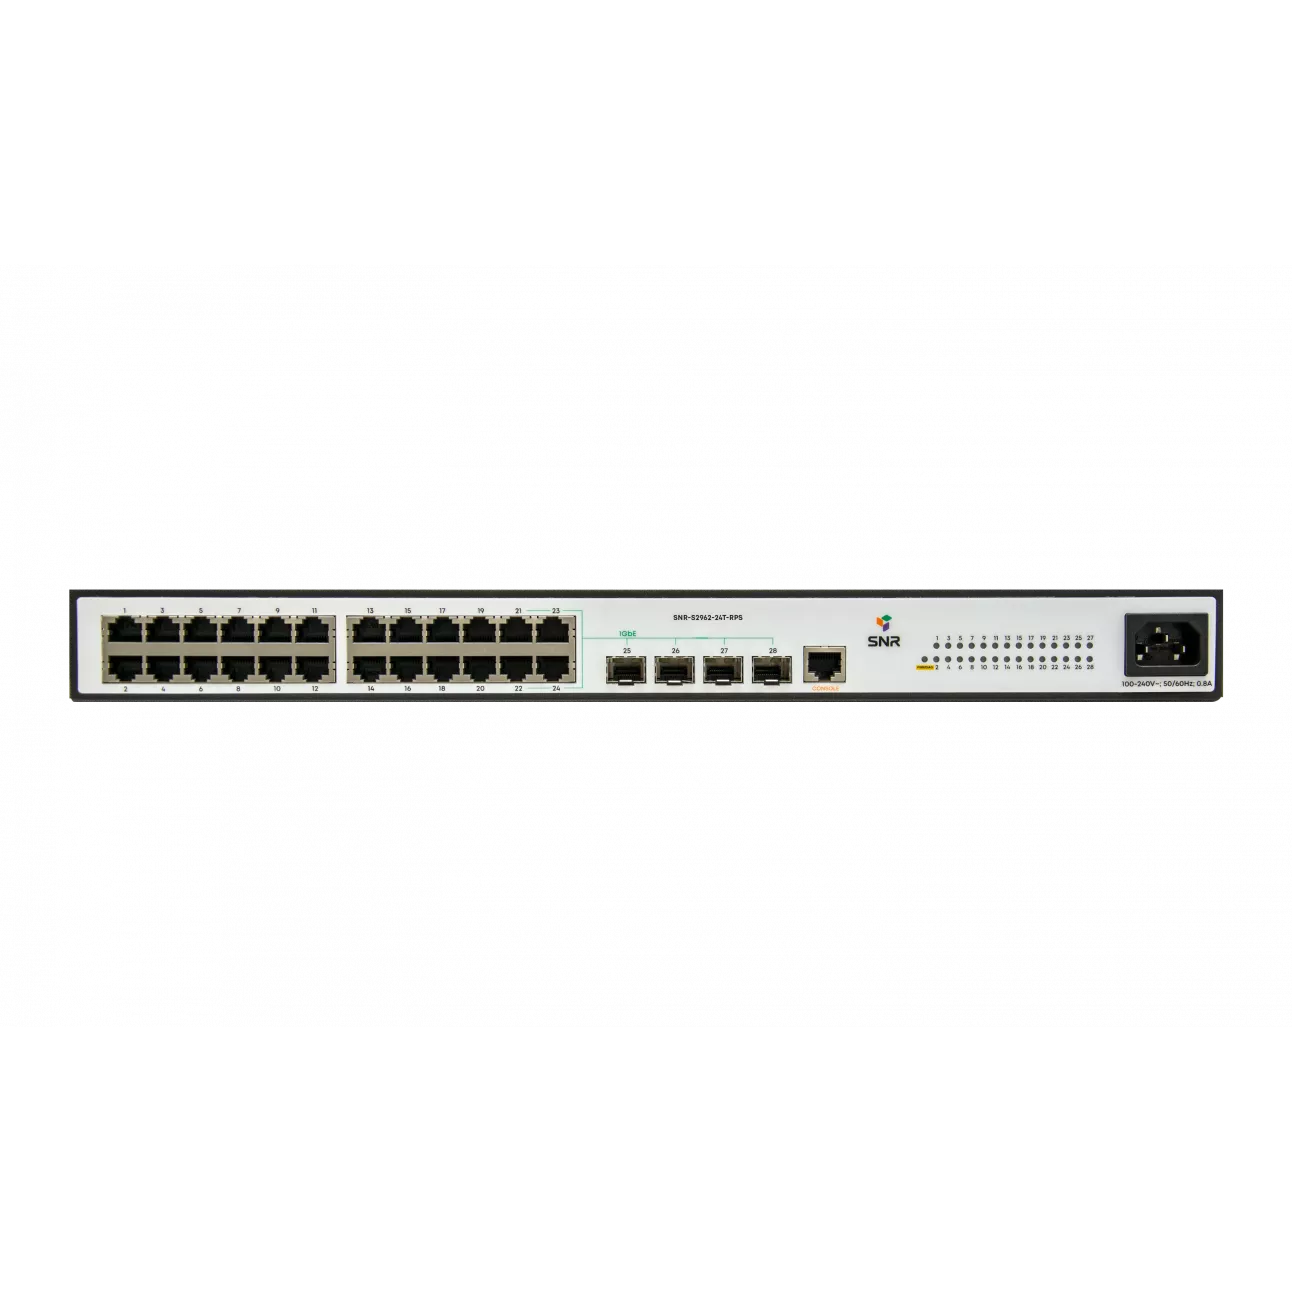 Коммутатор SNR SNR-S2962-24T-RPS, управляемый, кол-во портов: 24x100 Мбит/с, кол-во SFP/uplink: SFP 4x1 Гбит/с, установка в стойку (SNR-S2962-24T-RPS)